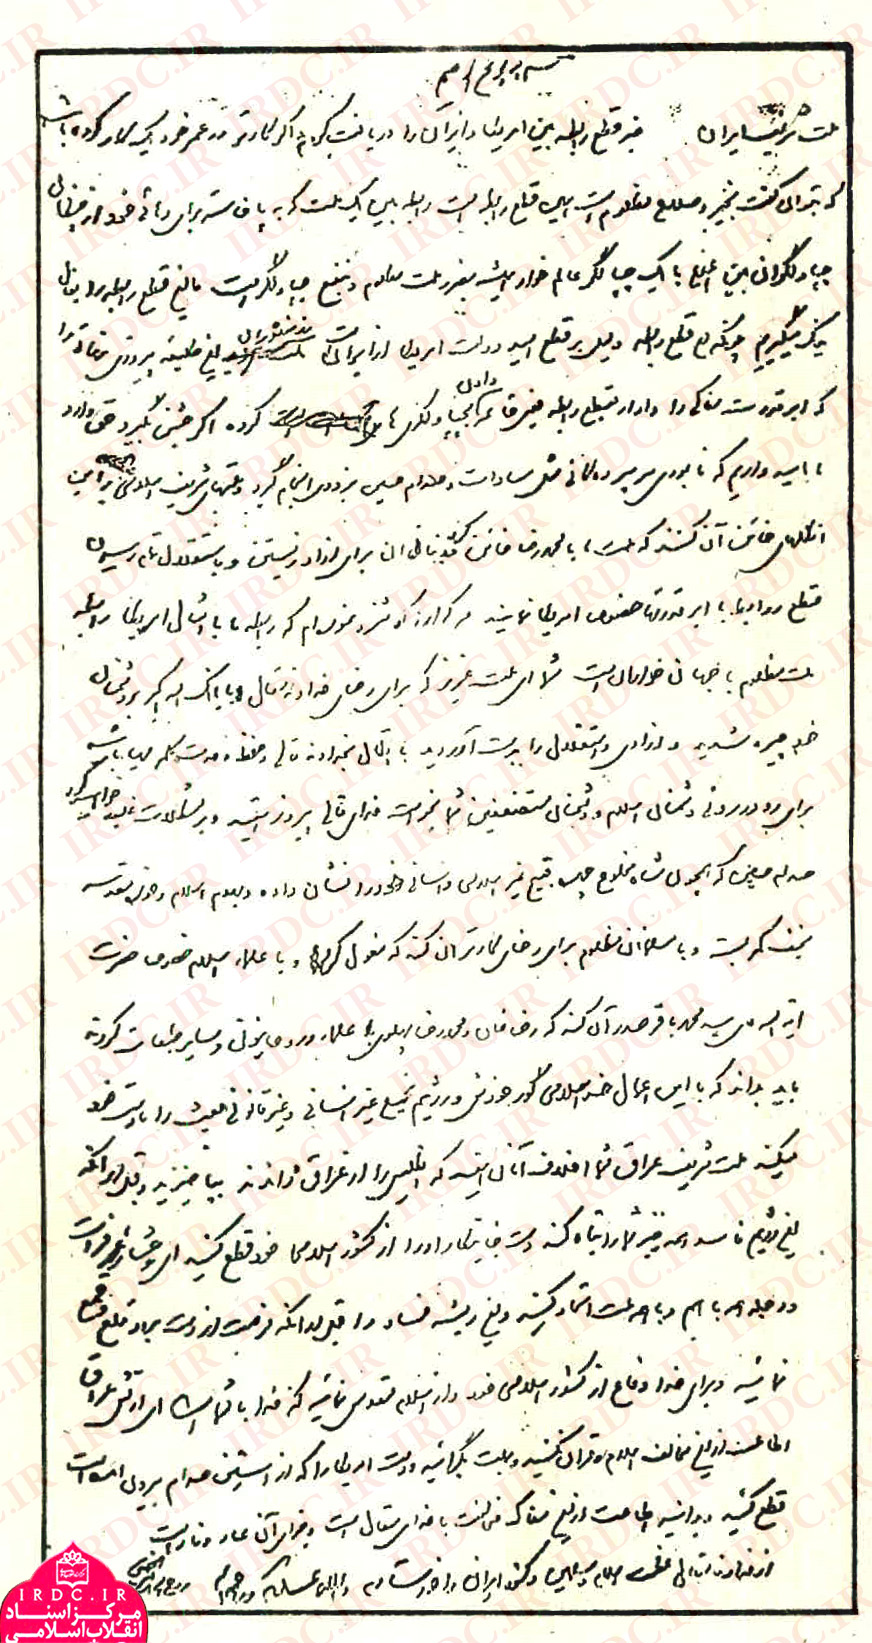 پیام جالب امام خمینی پس از قطع رابطه امریکا با ایران در سال 1359 + دست‌خط